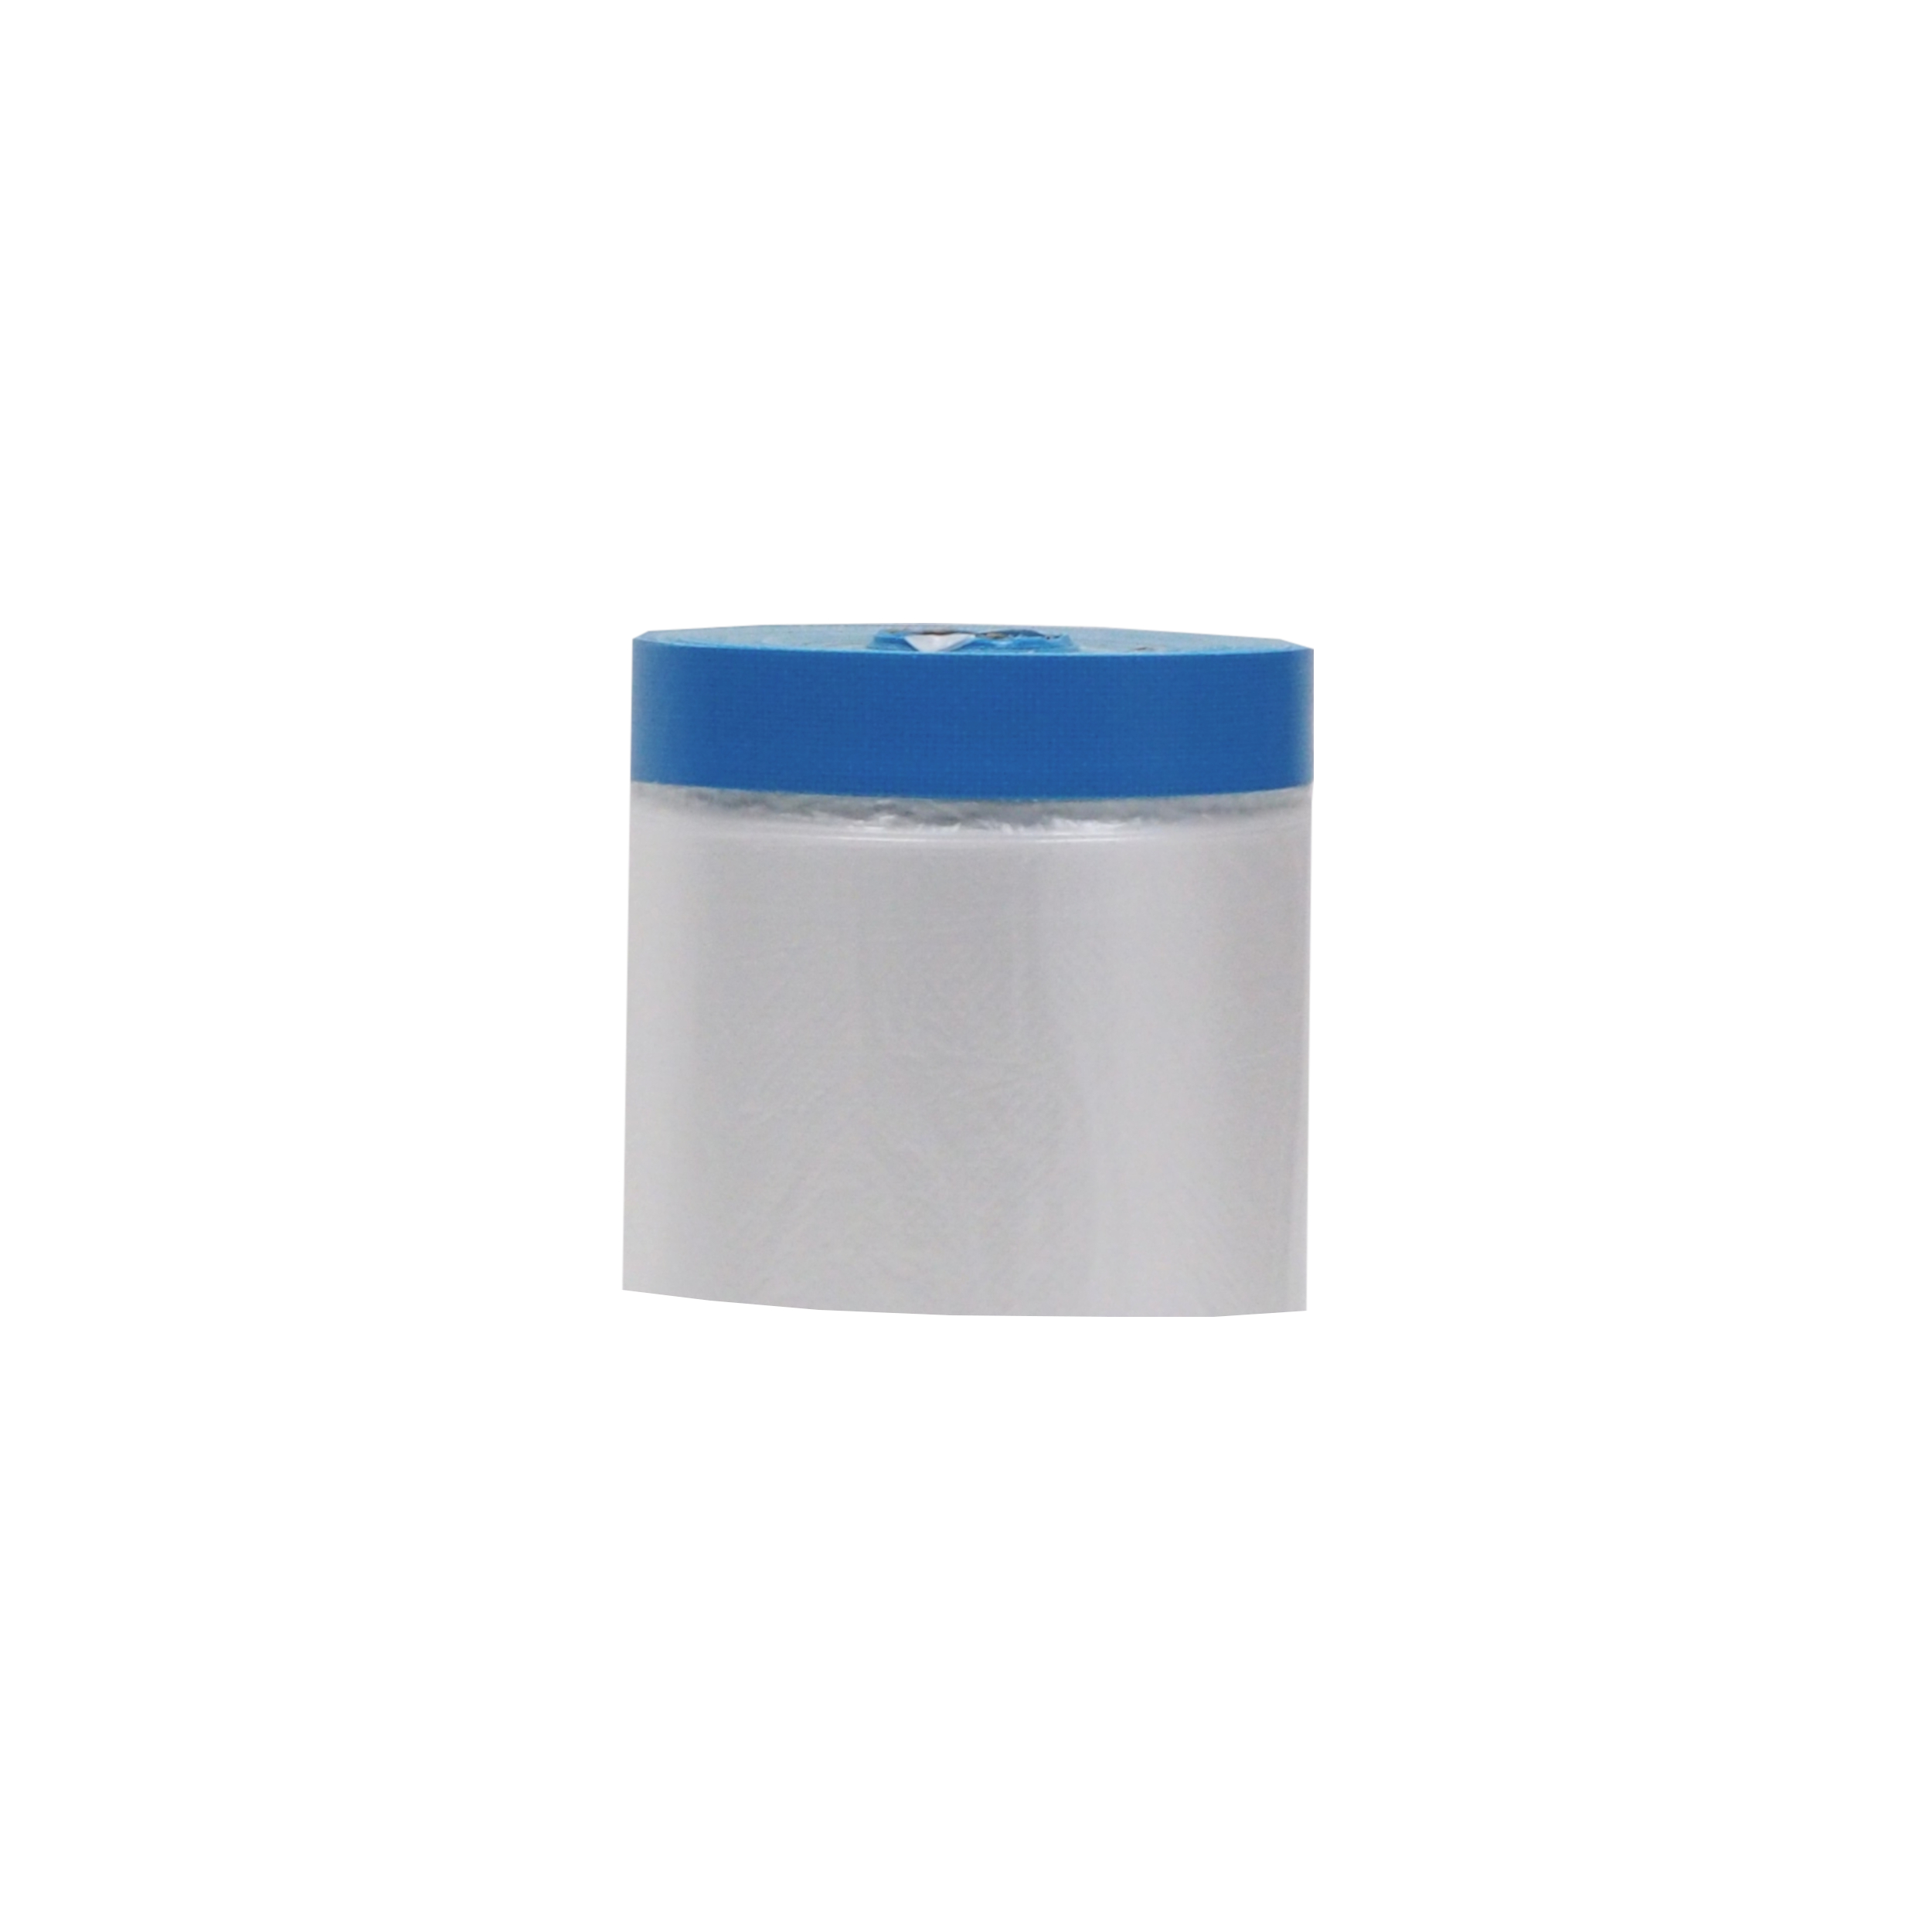 páska lepicí Targa blue mask, se zakrývací fólií, 55 cm x 20 m 0.19 Kg TOP Sklad4 701413 8